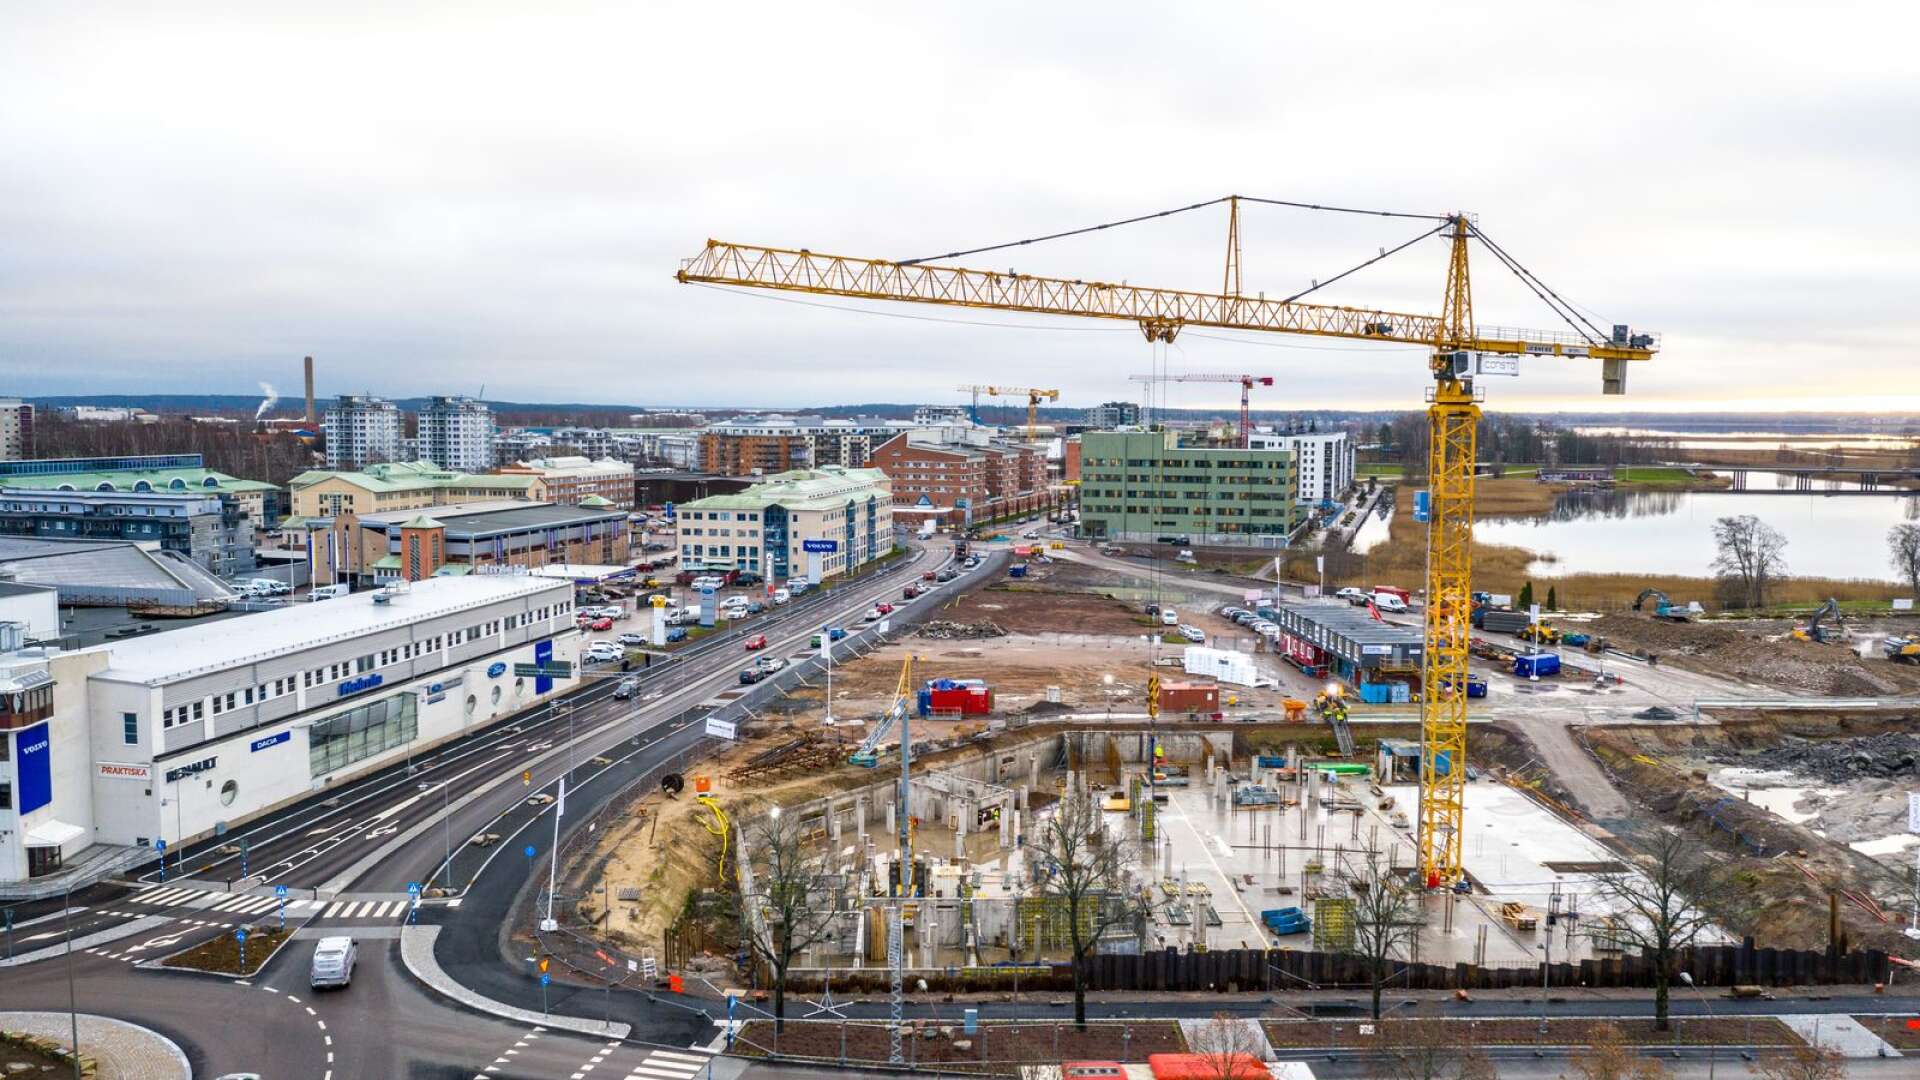 Byggandet i Karlstad fortsätter i mycket hög takt även under 2021. Mest intensivt är det på Tullholmen där flera stora projekt redan pågår.